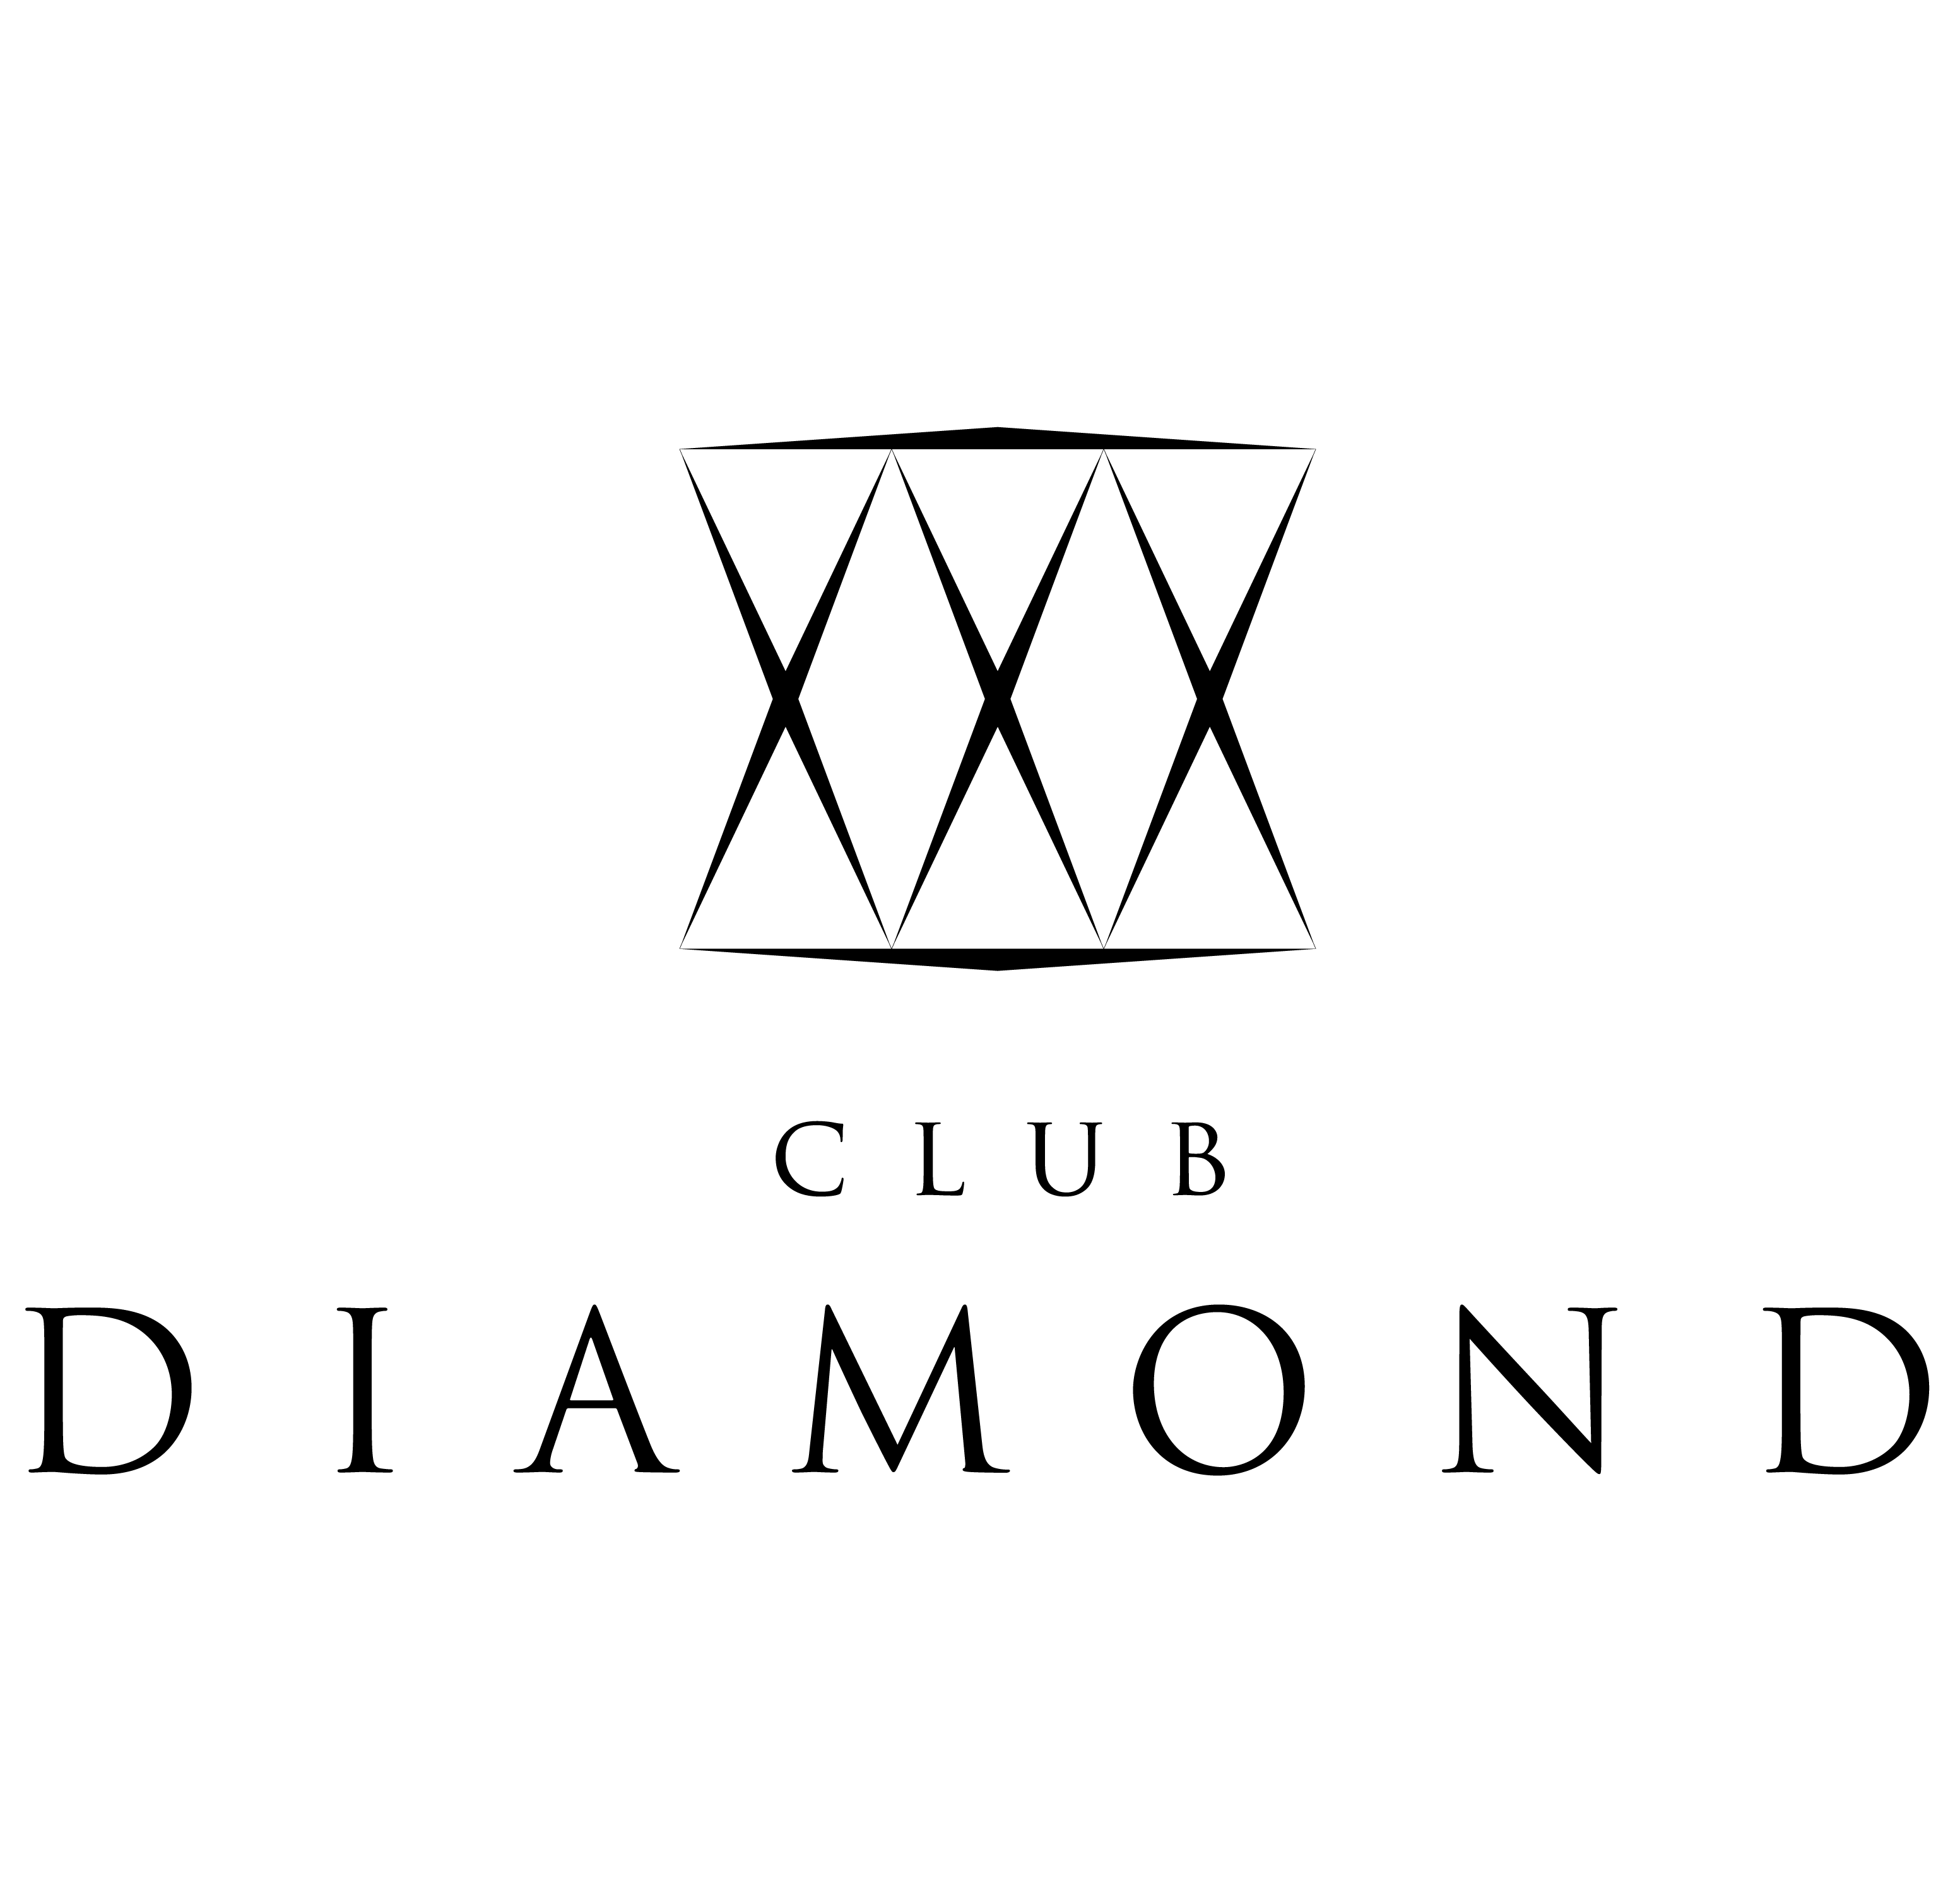 DIAMONDの姉妹店ロゴ3